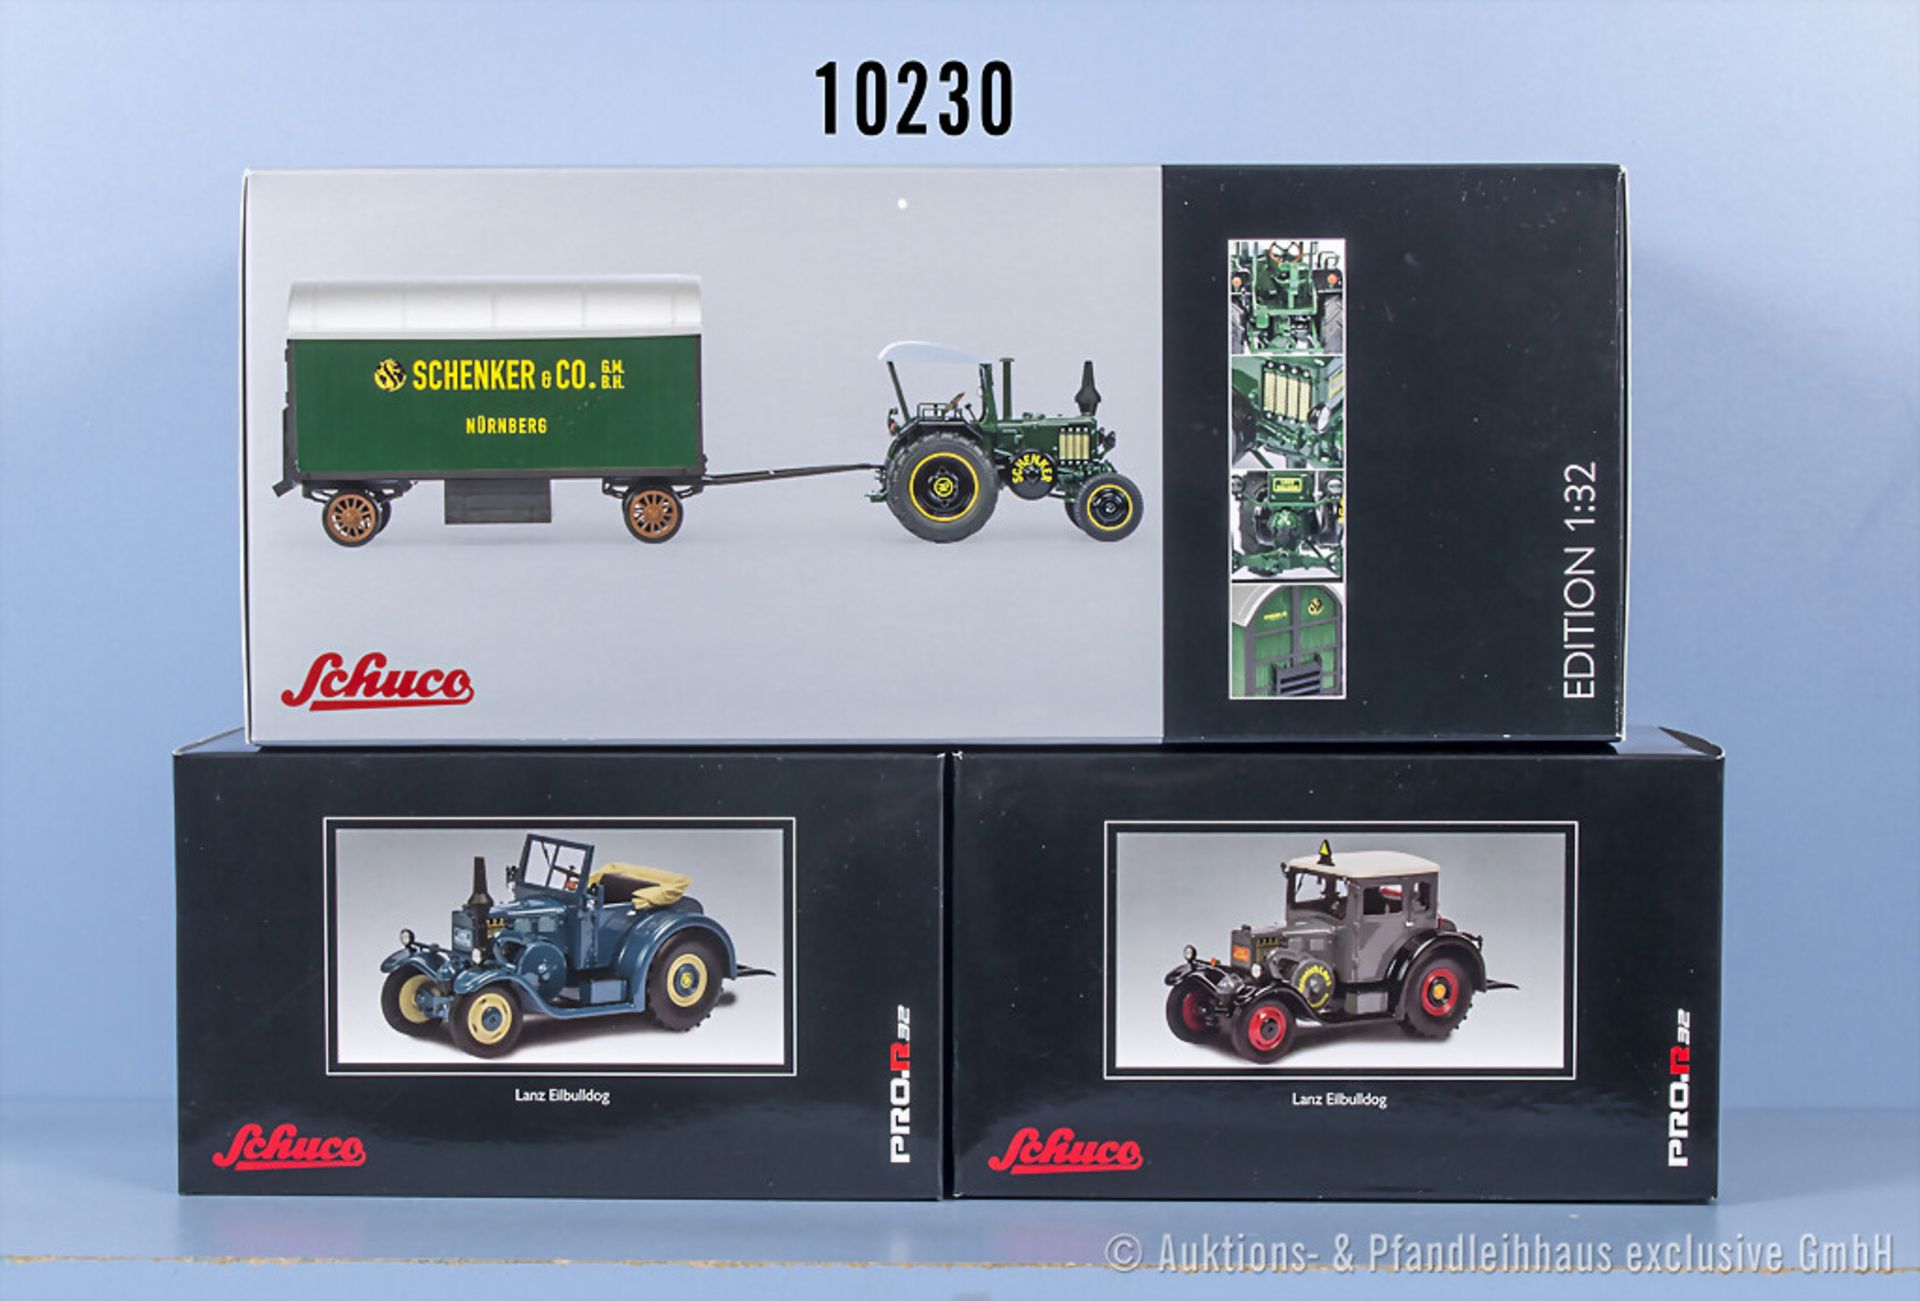 3 Schuco Modellfahrzeuge, Traktoren, Lanz Bulldog mit Anhänger "Schenker", Lanz ...